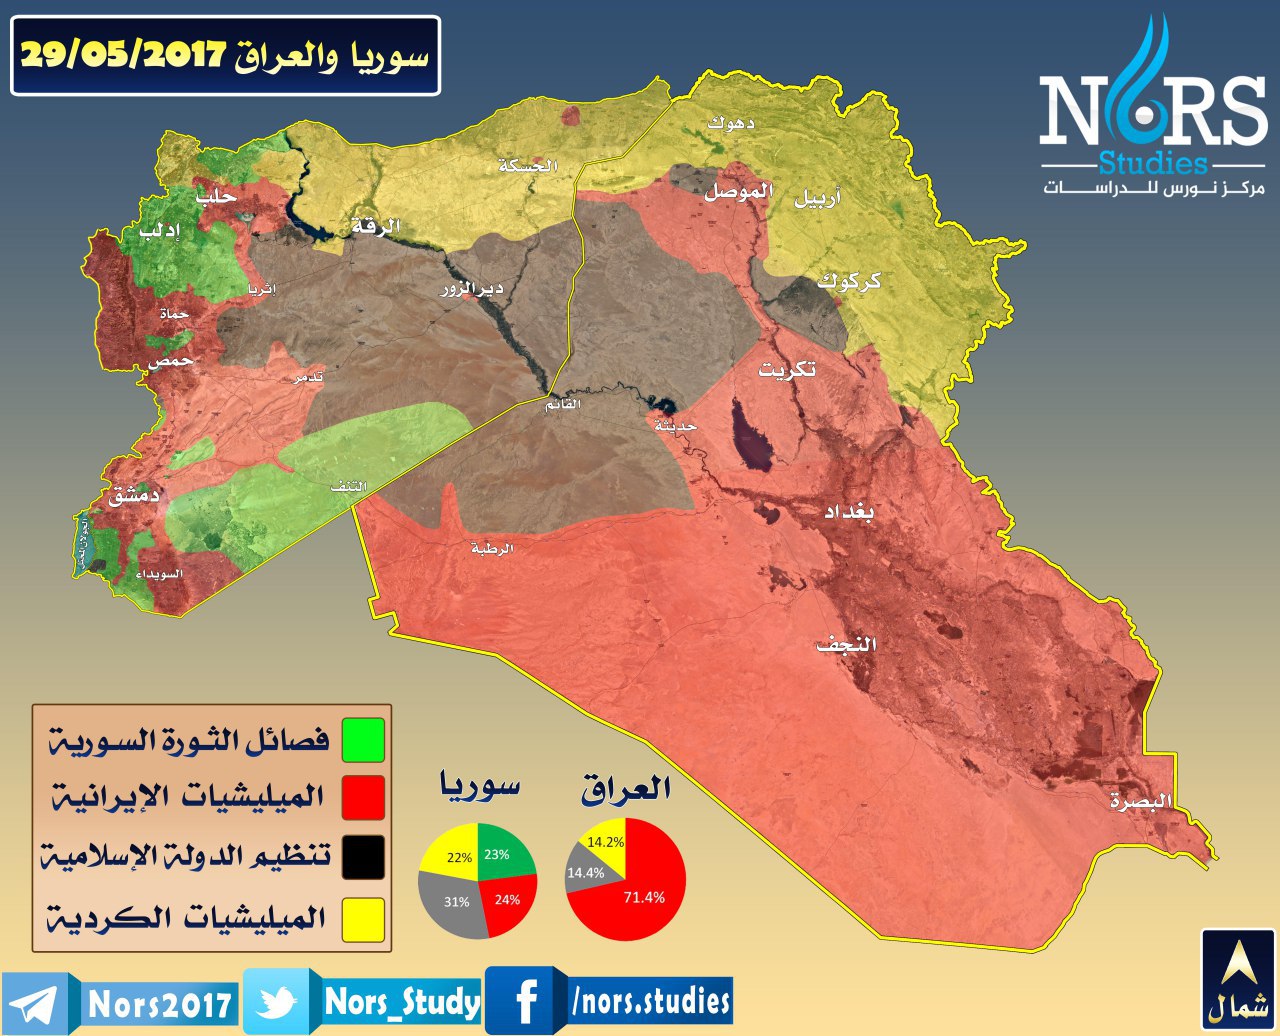 خريطة السيطرة في سوريا والعراق - 29 أيار 2017 (مركز نورس للدراسات)